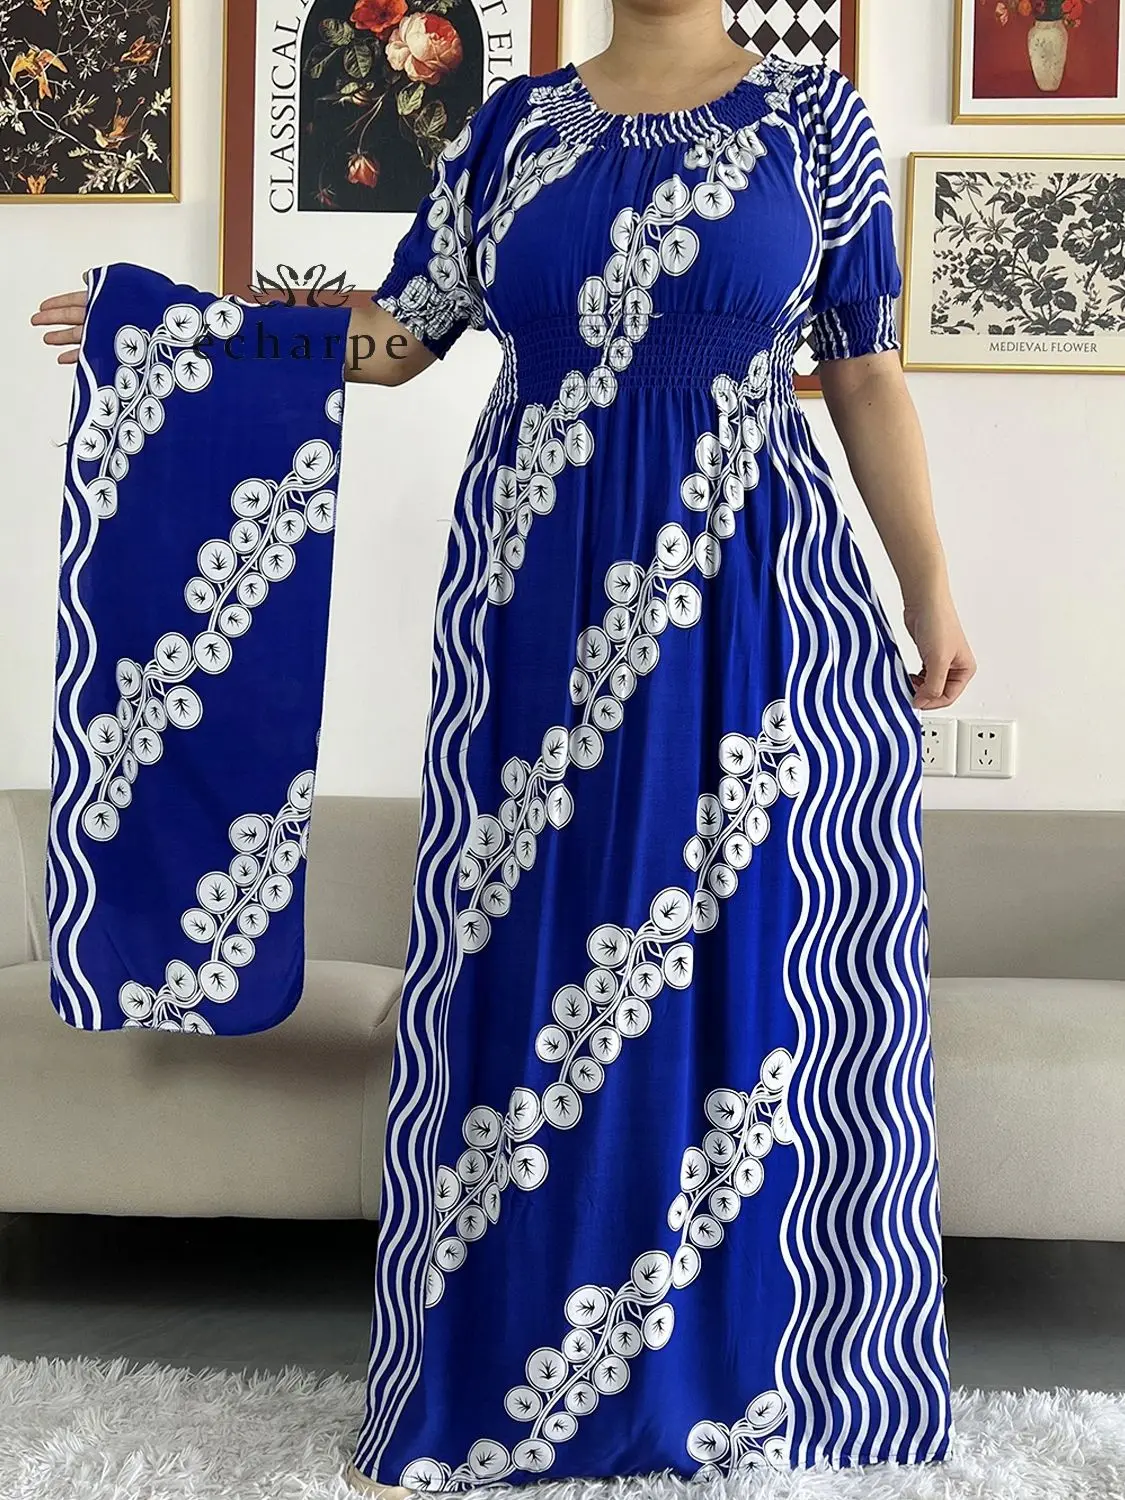 Robe africaine Dashiki en coton imprimé Floral  manches courtes  taille droite  ample  avec écharpe